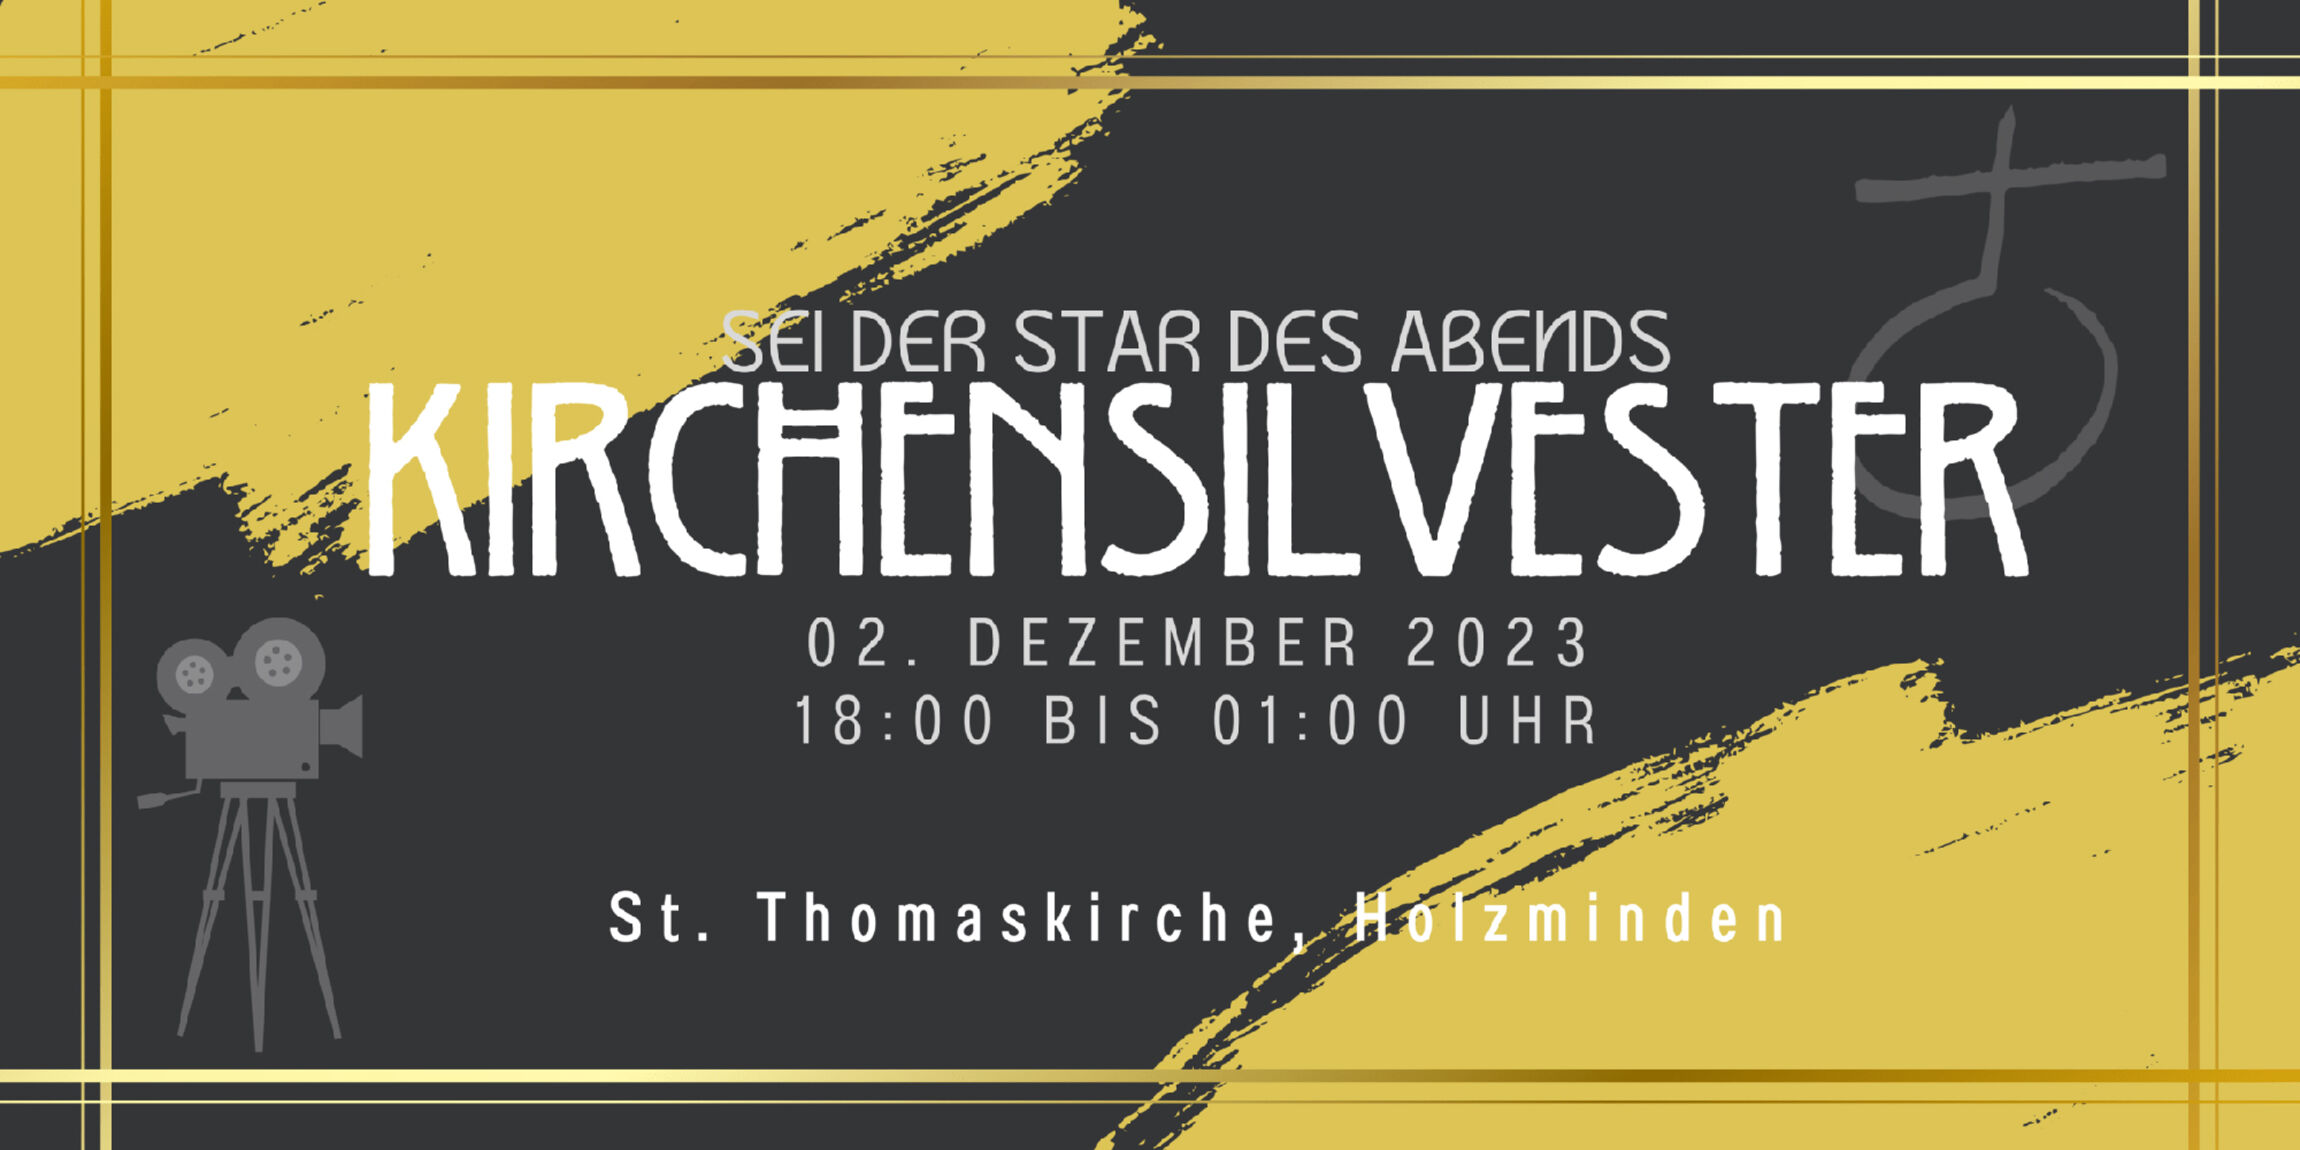 Plakat Kirchensilvester am Samstag, 02. Dezember 2023